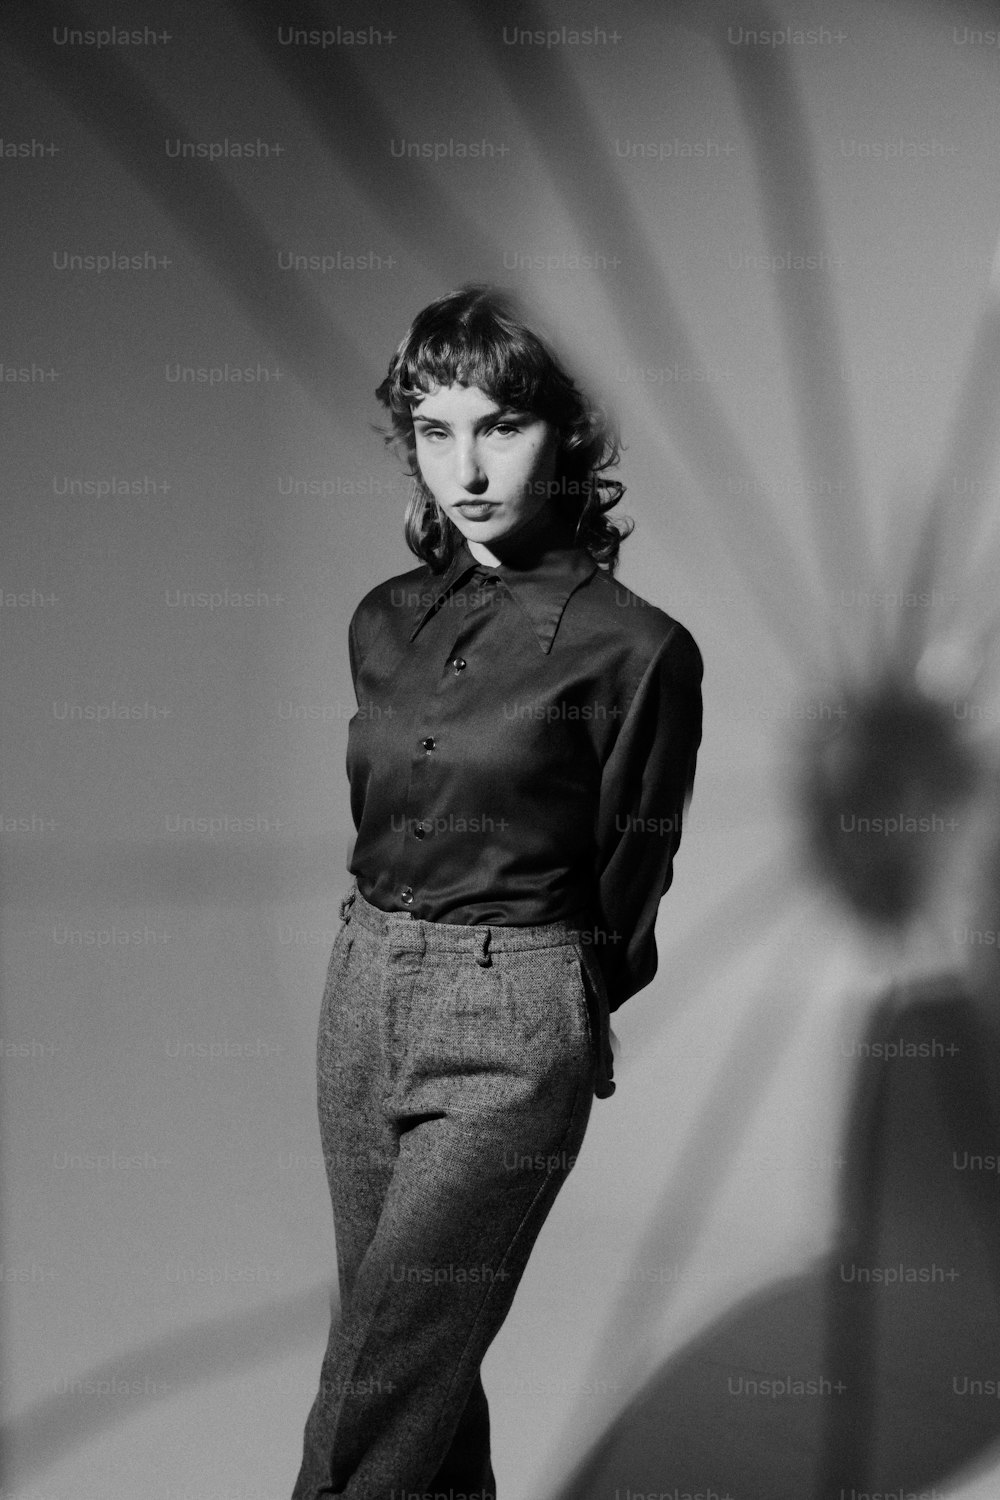 Una foto en blanco y negro de una mujer parada frente a una pared